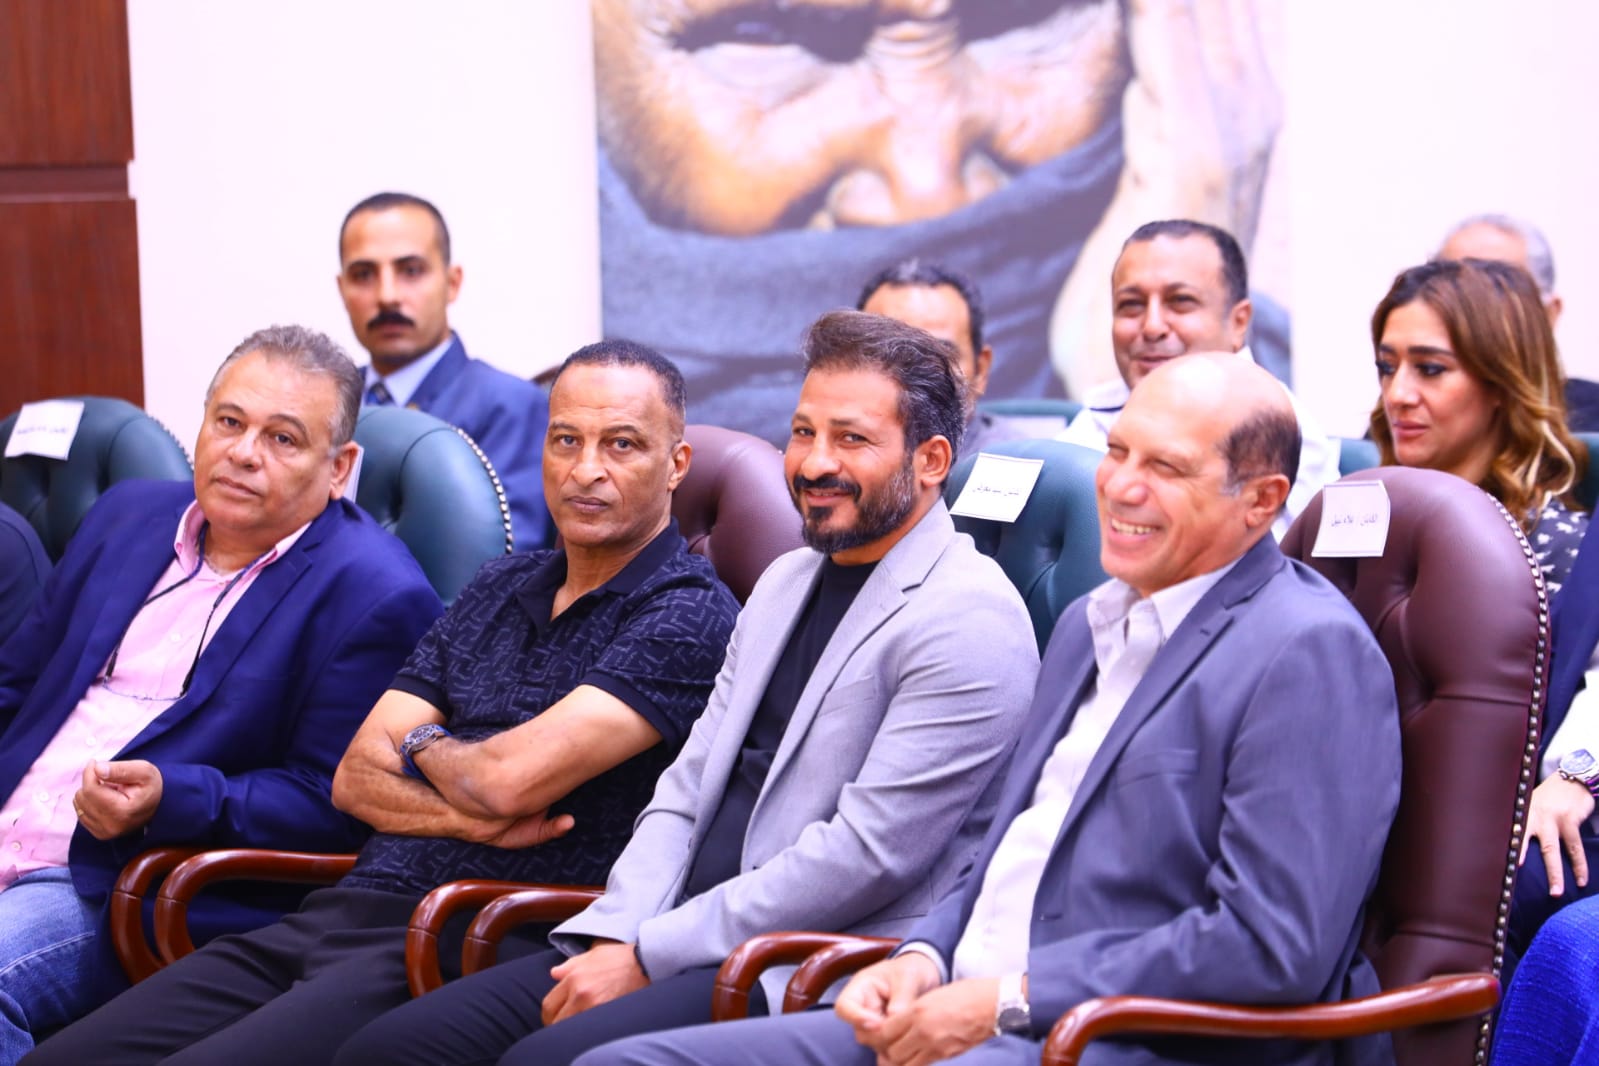 الحفل الختامي لبطولة دوري أبناء مصر لكرة القدم لدور الرعاية